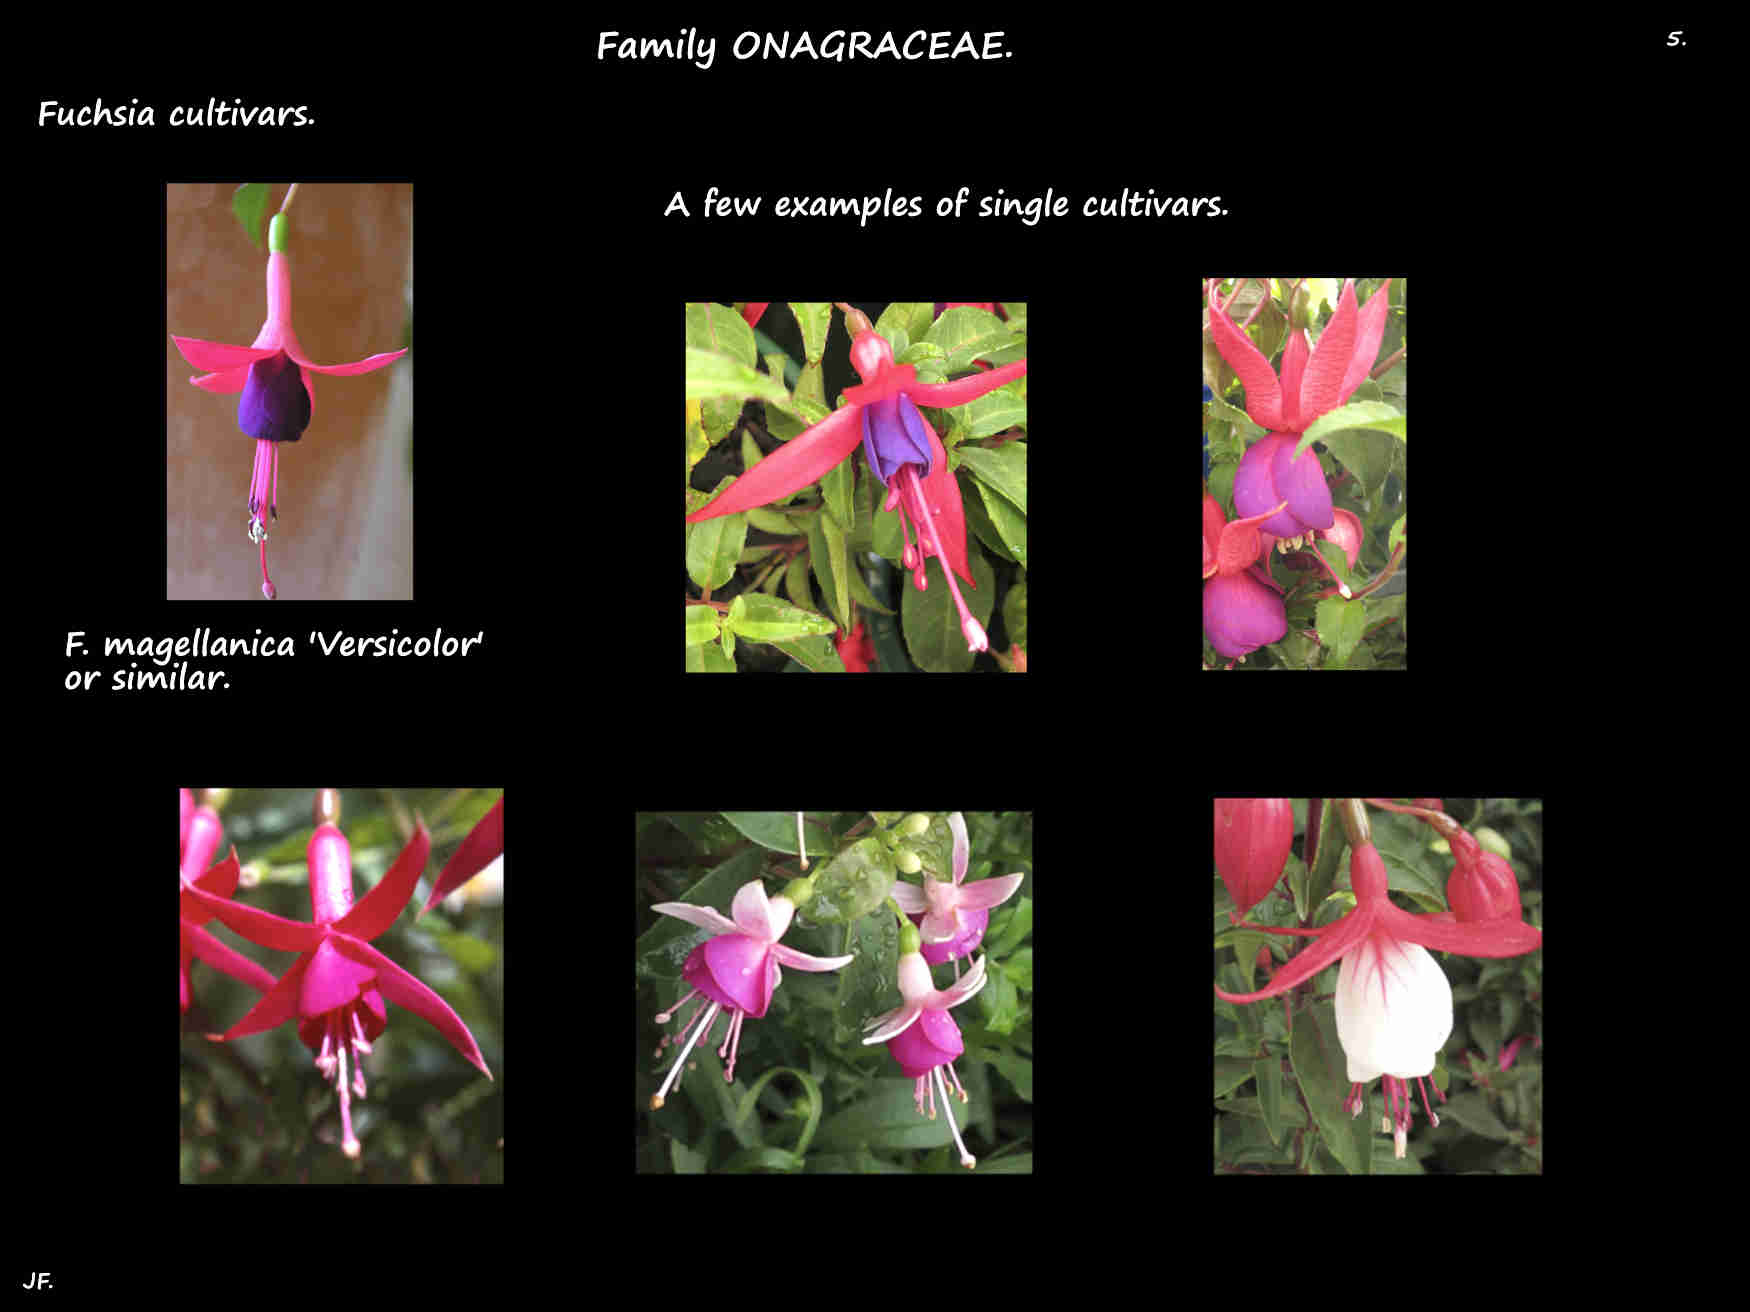 5 Some single Fuchsia cultivars